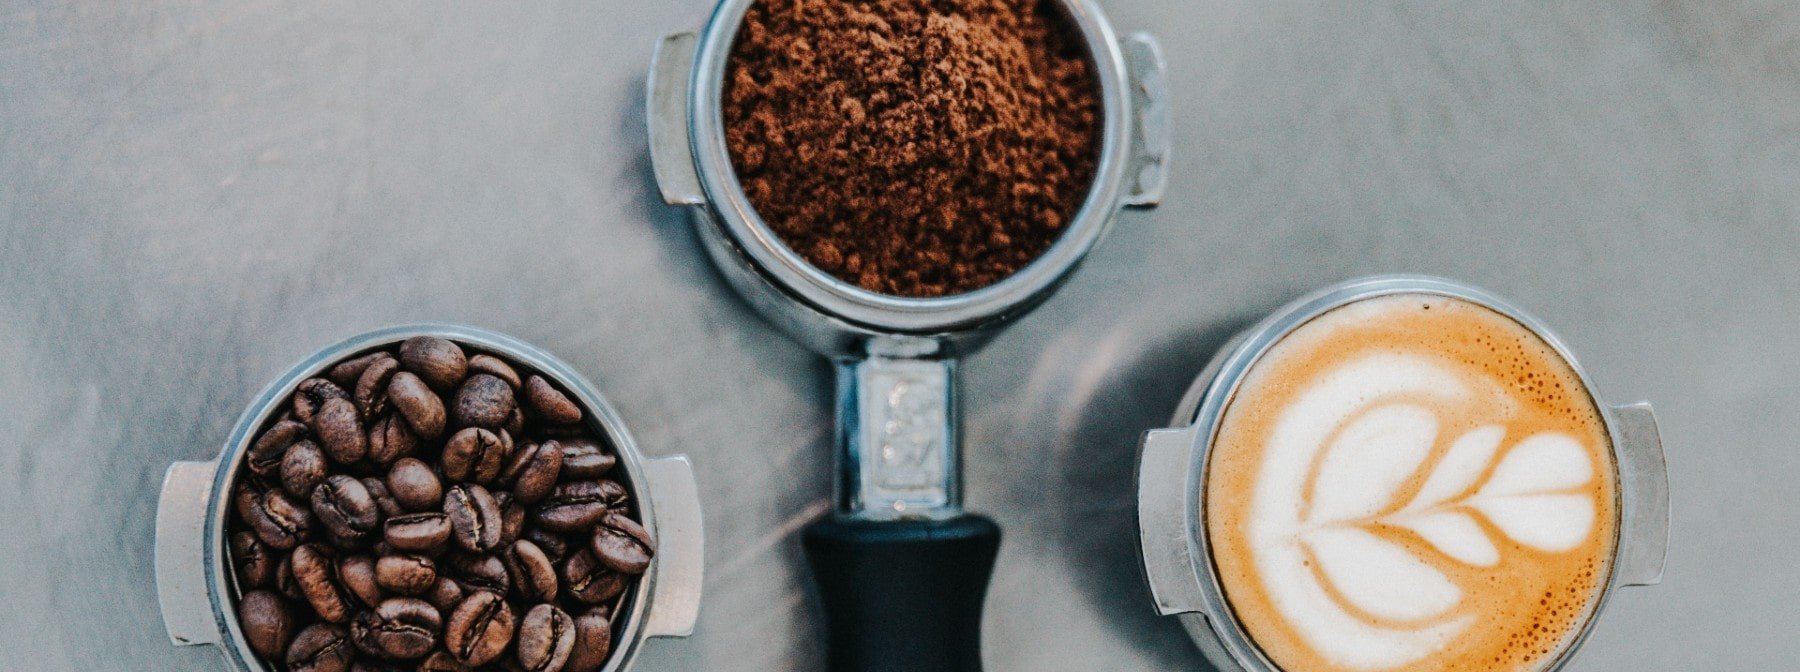 Ποια είναι τα οφέλη της καφεΐνης; Τα οφέλη στην απόδοση αξίζουν ή όχι;